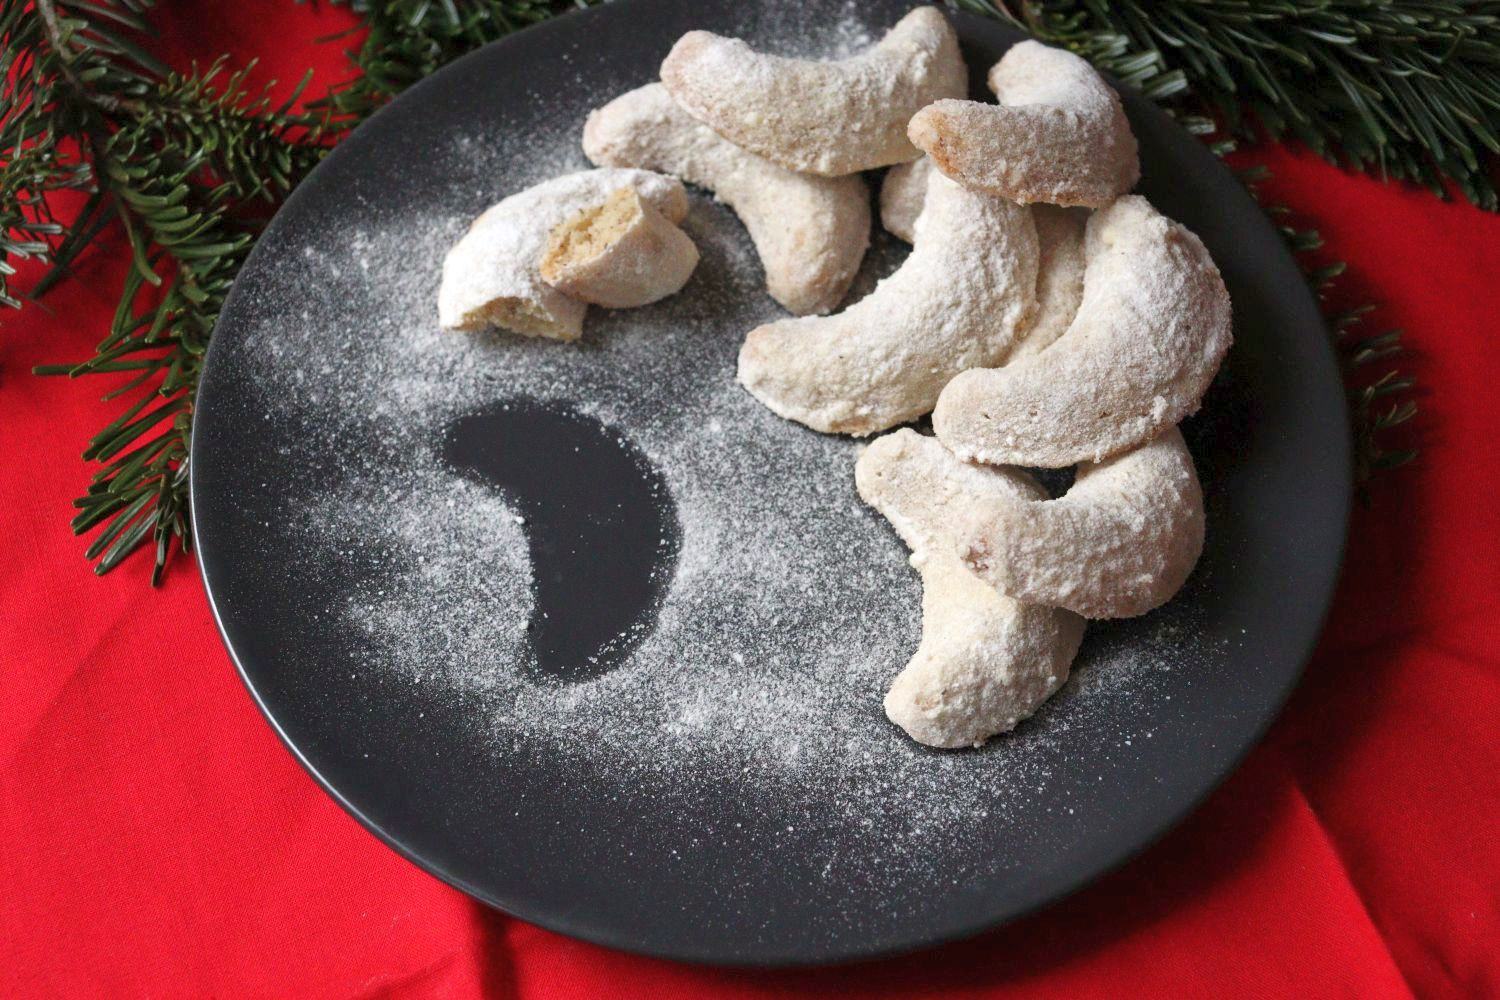 Vanillekipferl - German Vanilla Crescent Cookies - German Christmas Cookies